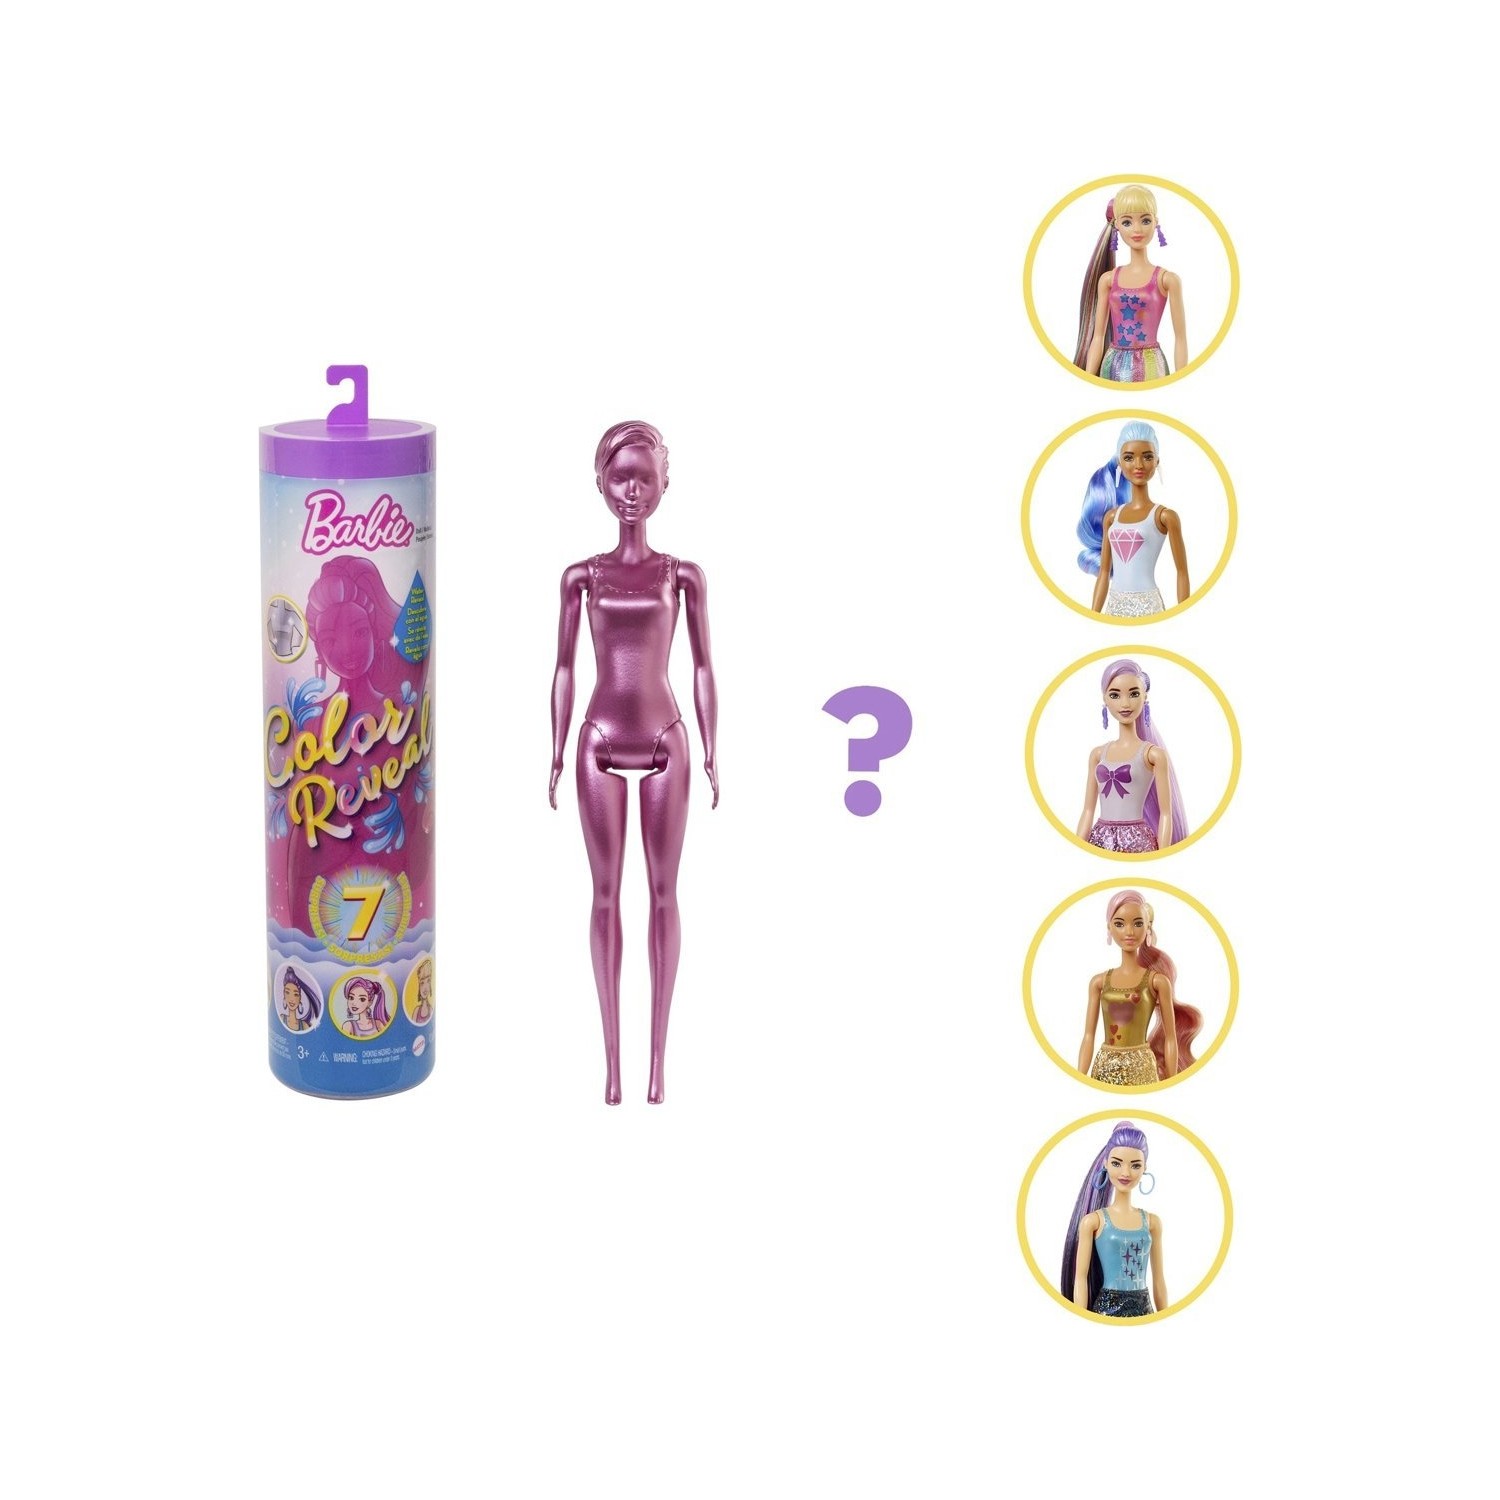 Кукла Barbie Barbie Color Reveal GWC55 кукла barbie color reveal chelsea dolls gtp52